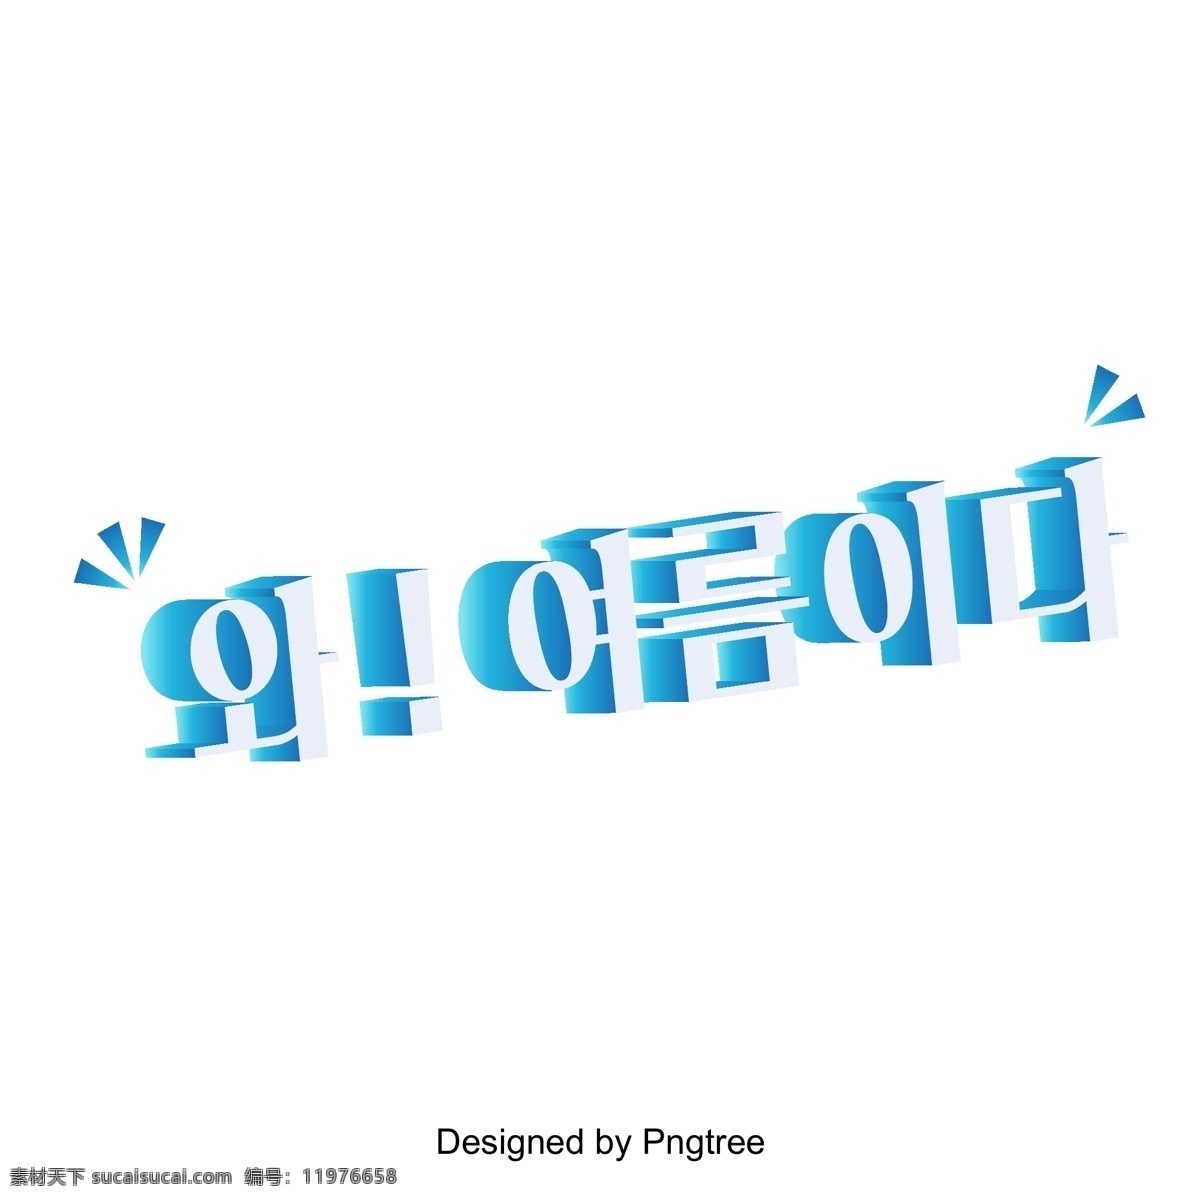 夏天 蓝色 d 场景 人物 在夏天 夏季 橙色 线 逐渐 变 细 韩文 现场 字形 三维字体 韩国风格 清晰的字体 平坦化 图标